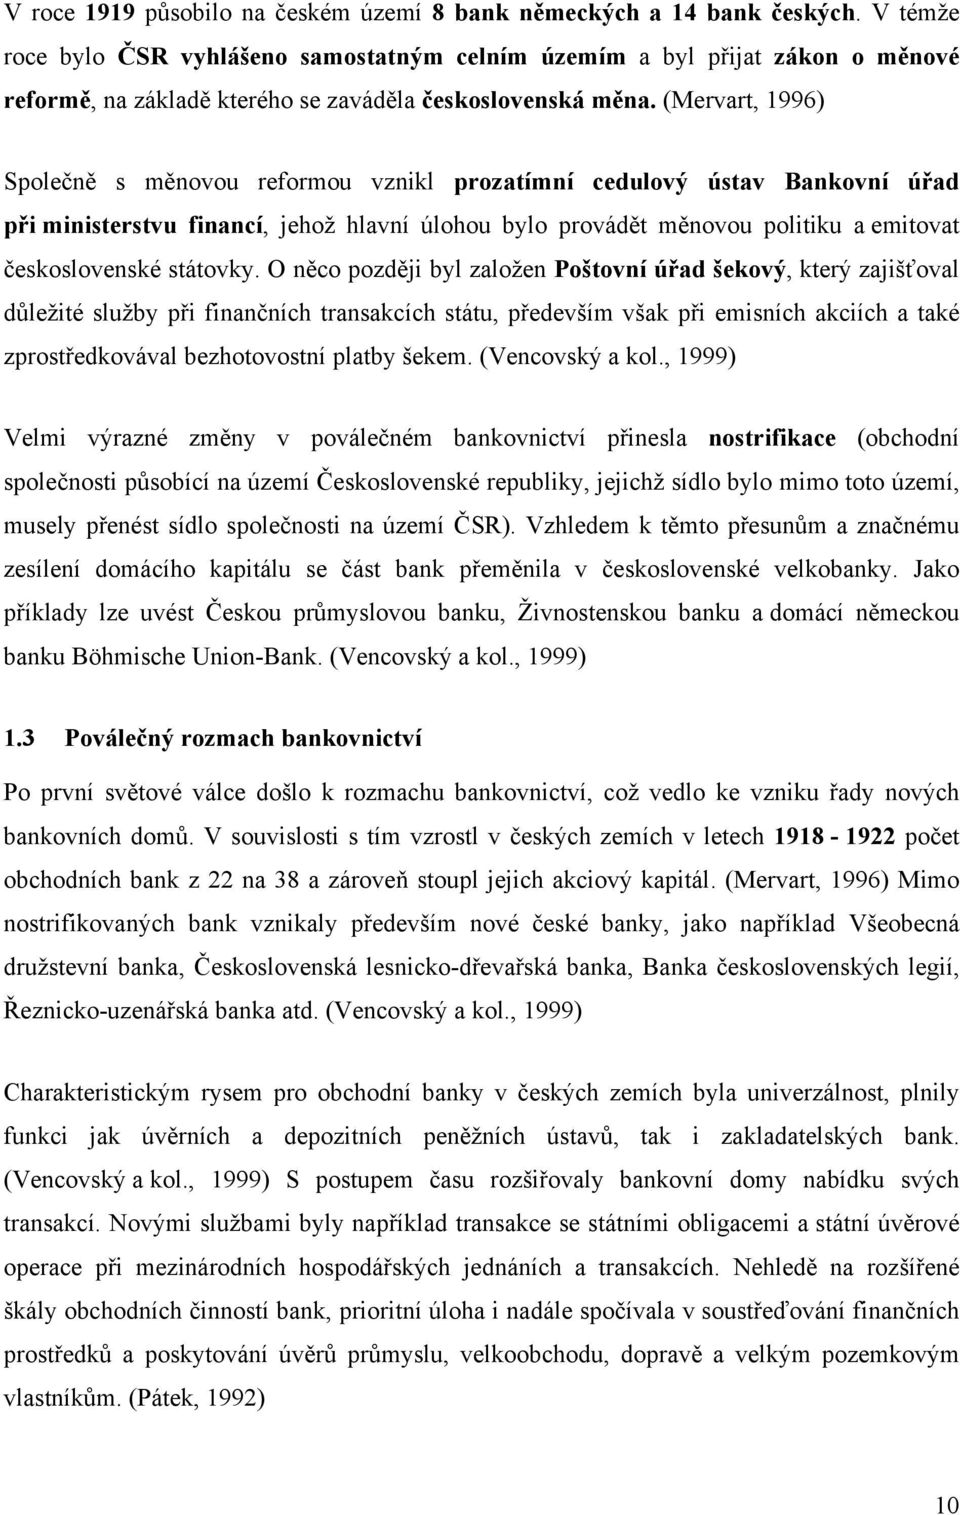 (Mervart, 1996) Společně s měnovou reformou vznikl prozatímní cedulový ústav Bankovní úřad při ministerstvu financí, jehož hlavní úlohou bylo provádět měnovou politiku a emitovat československé